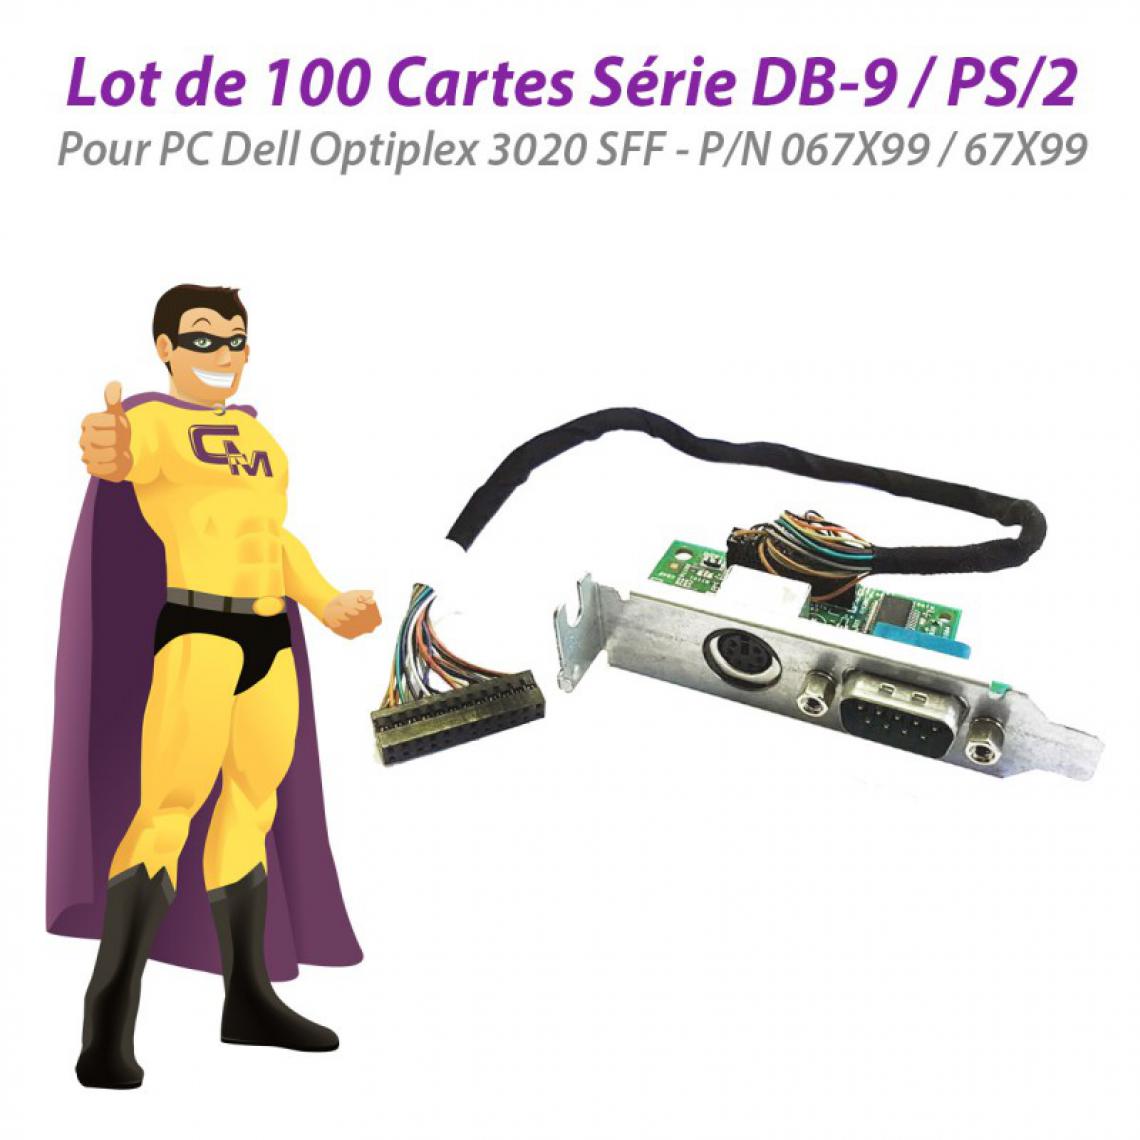 Dell - Lot x100 Cartes PS/2 Série DB9M Dell 3020 SFF KMCOM1 067X99 67X99 Low Profile - Carte Contrôleur USB